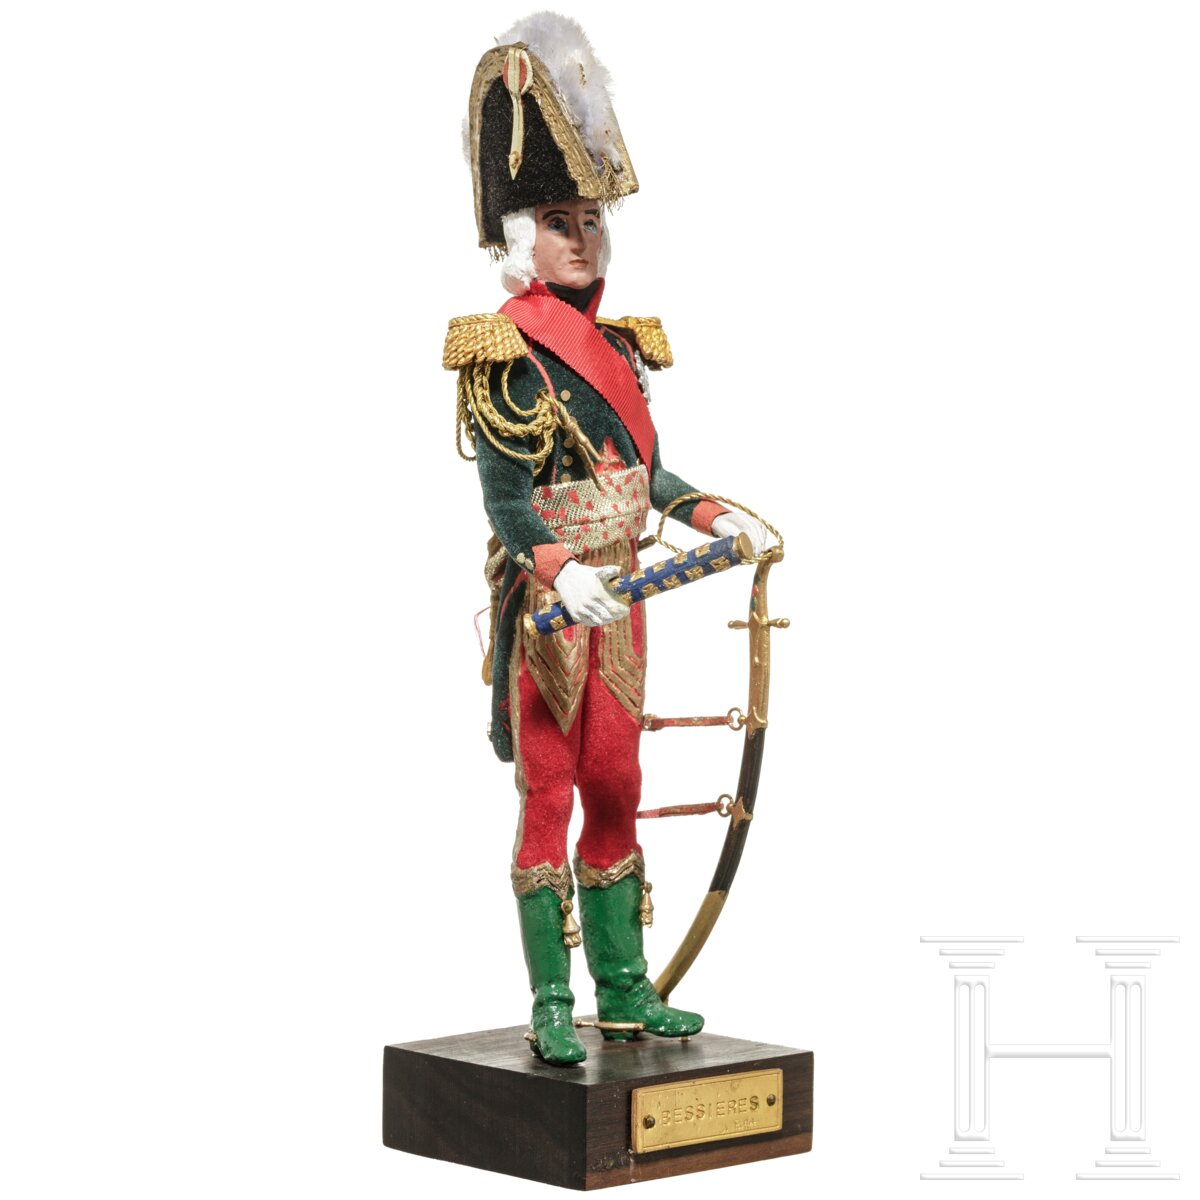 Marschall Bessieres um 1810 - Uniformfigur von Marcel Riffet, 20. Jhdt. - Image 2 of 6